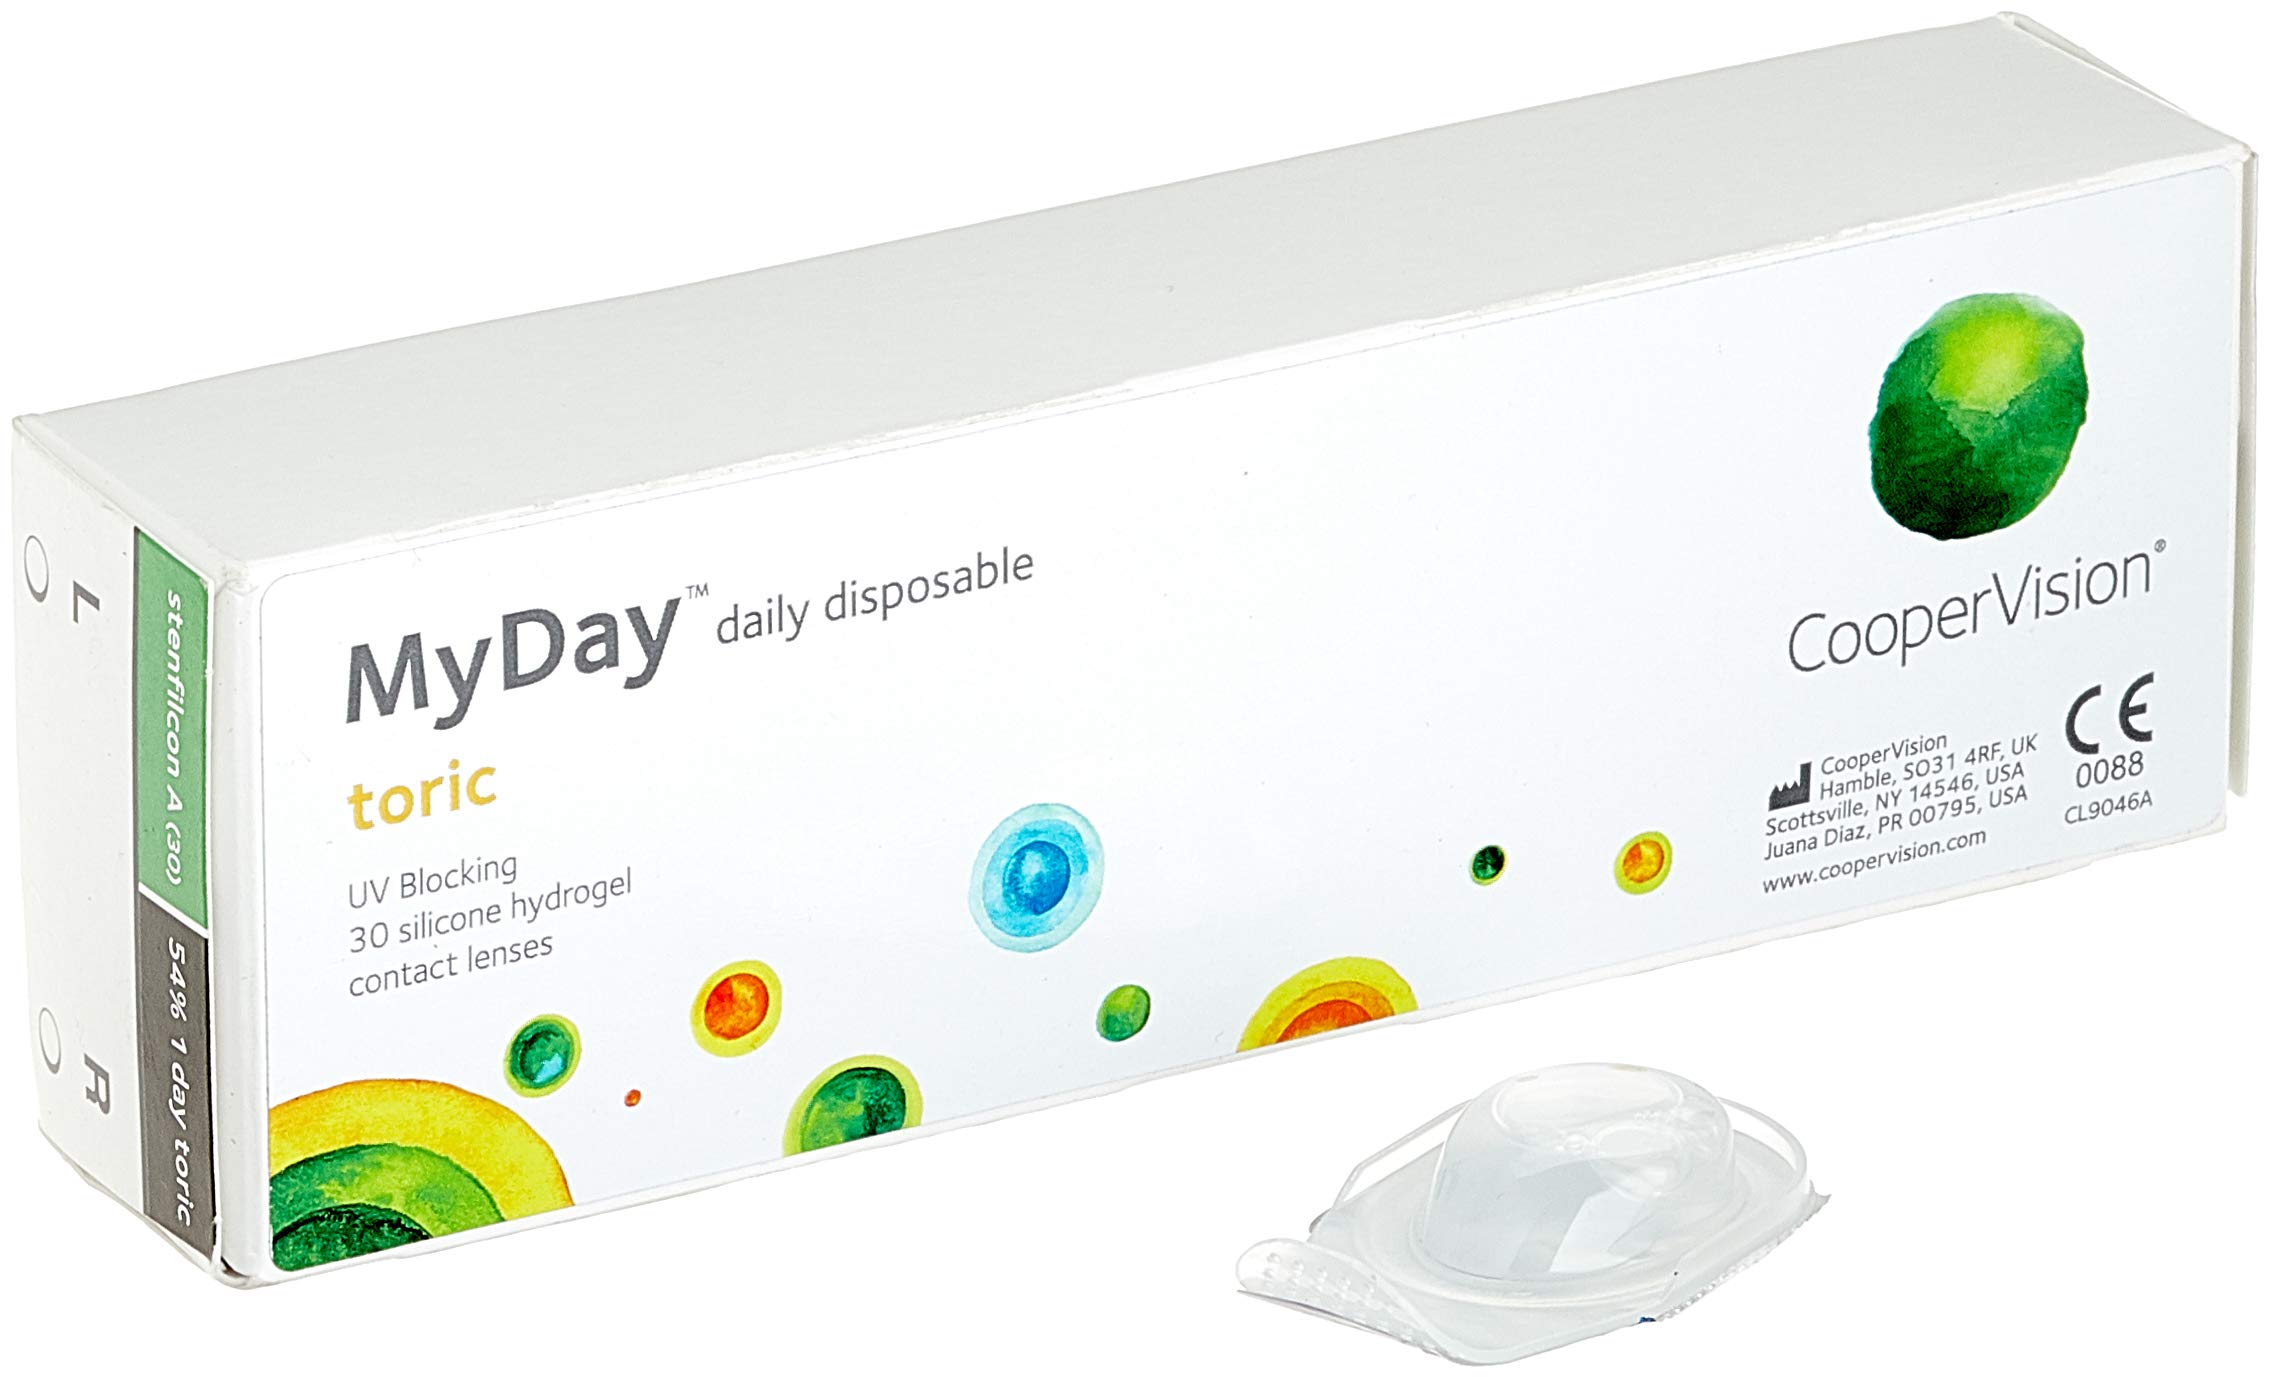 MYDAY Daily disposable Torisch Tageslinsen weich, 30 Stück / BC 8.6 mm / Dia 14.5 mm / CYL -1,75 / ACHSE 160 / -2.25 Dioptrien